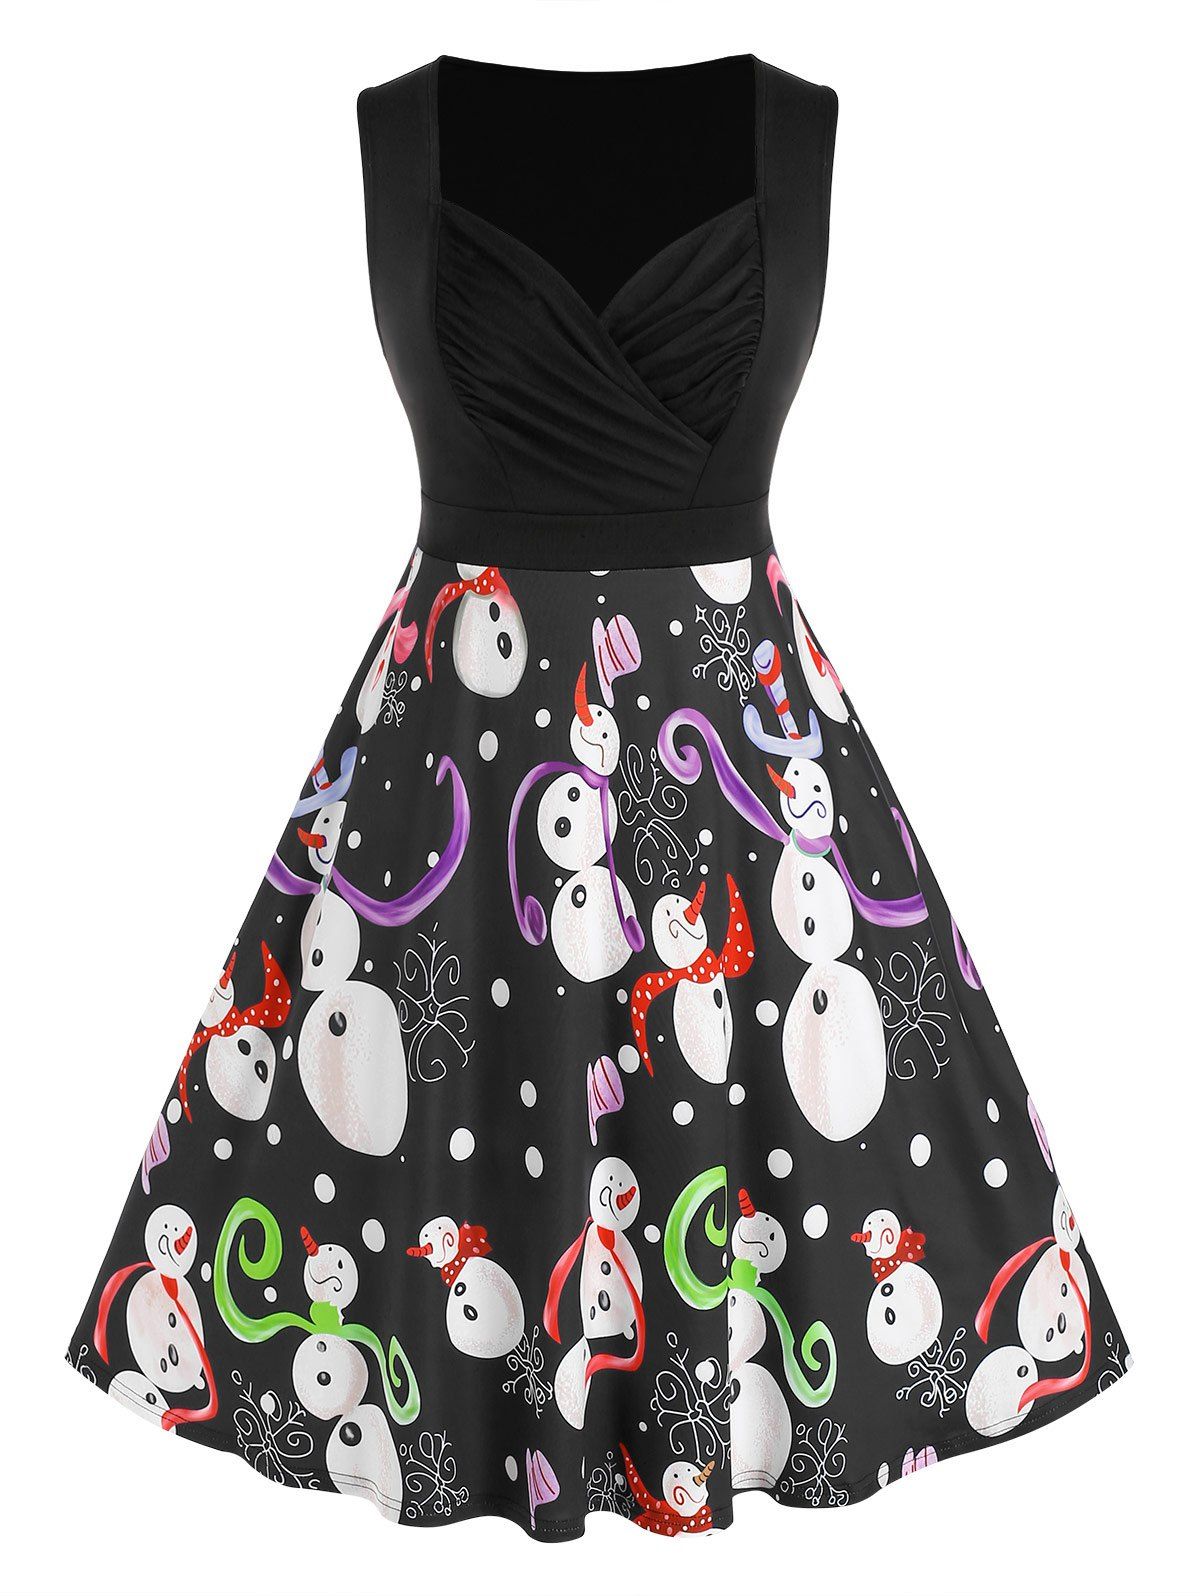 Plus Size Snowman Printed A Line Dress - BLACK 4X